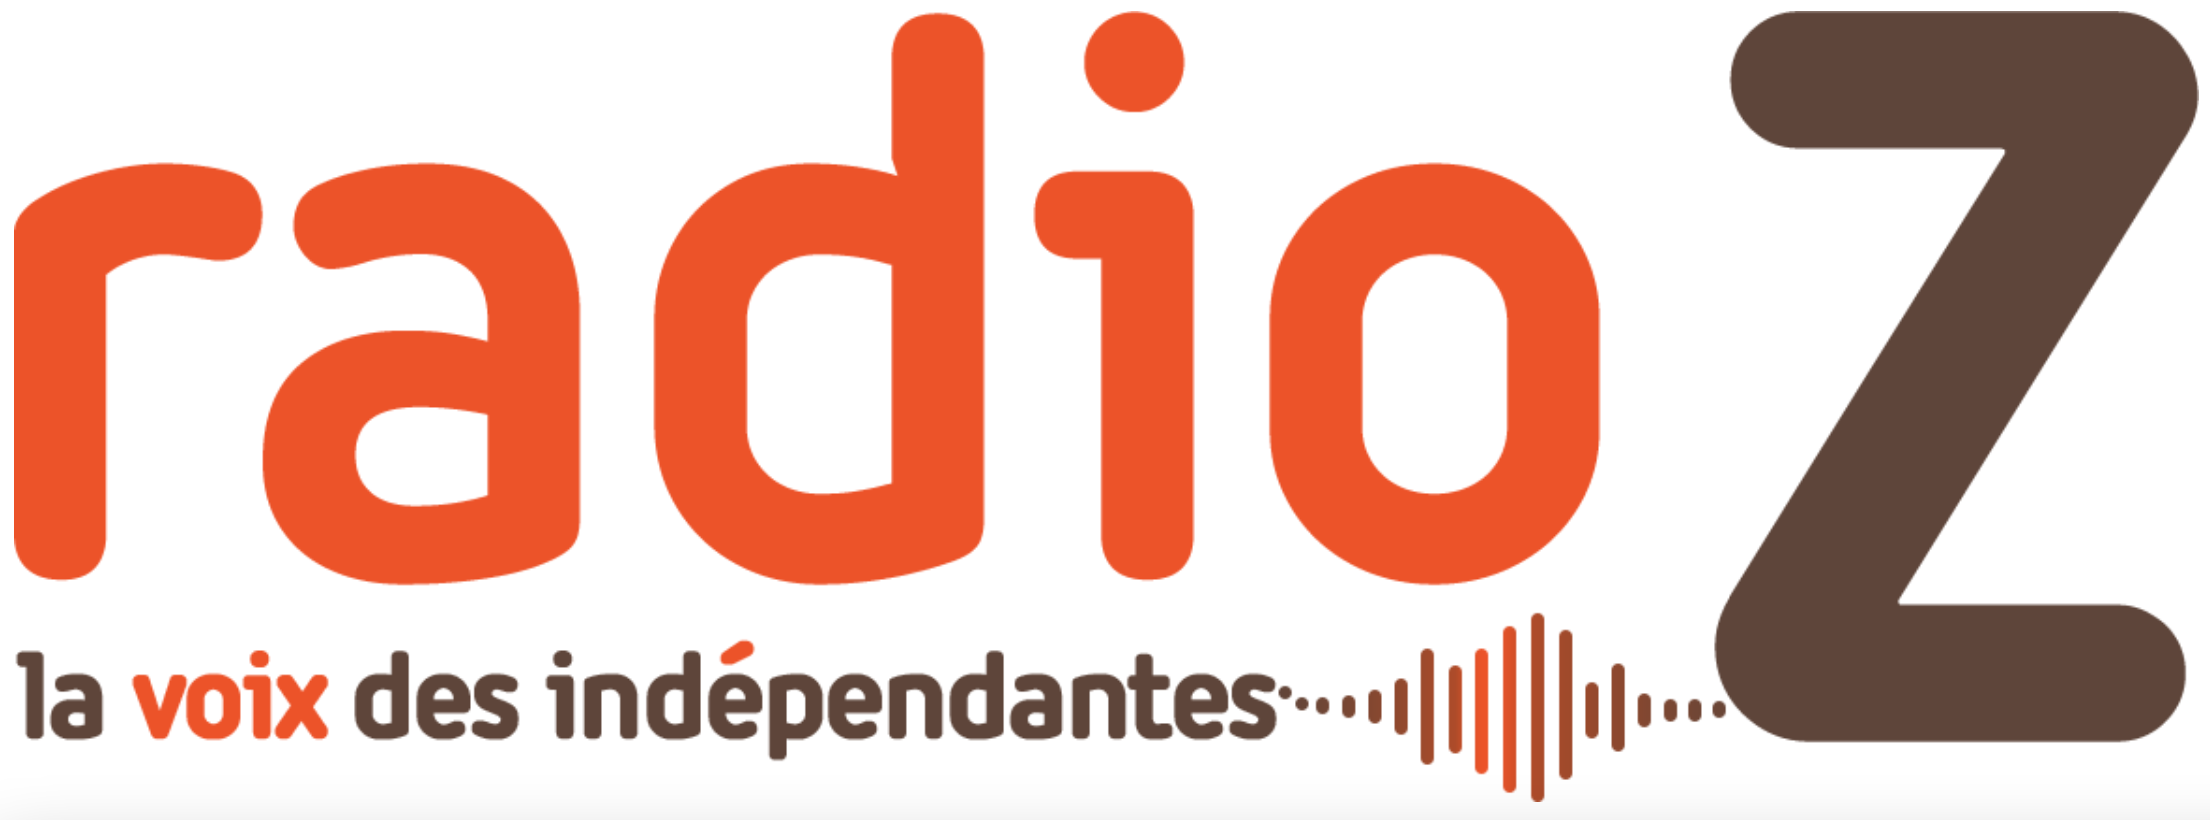 Belgique : les radios indépendantes redoutent l'arrivée du DAB+